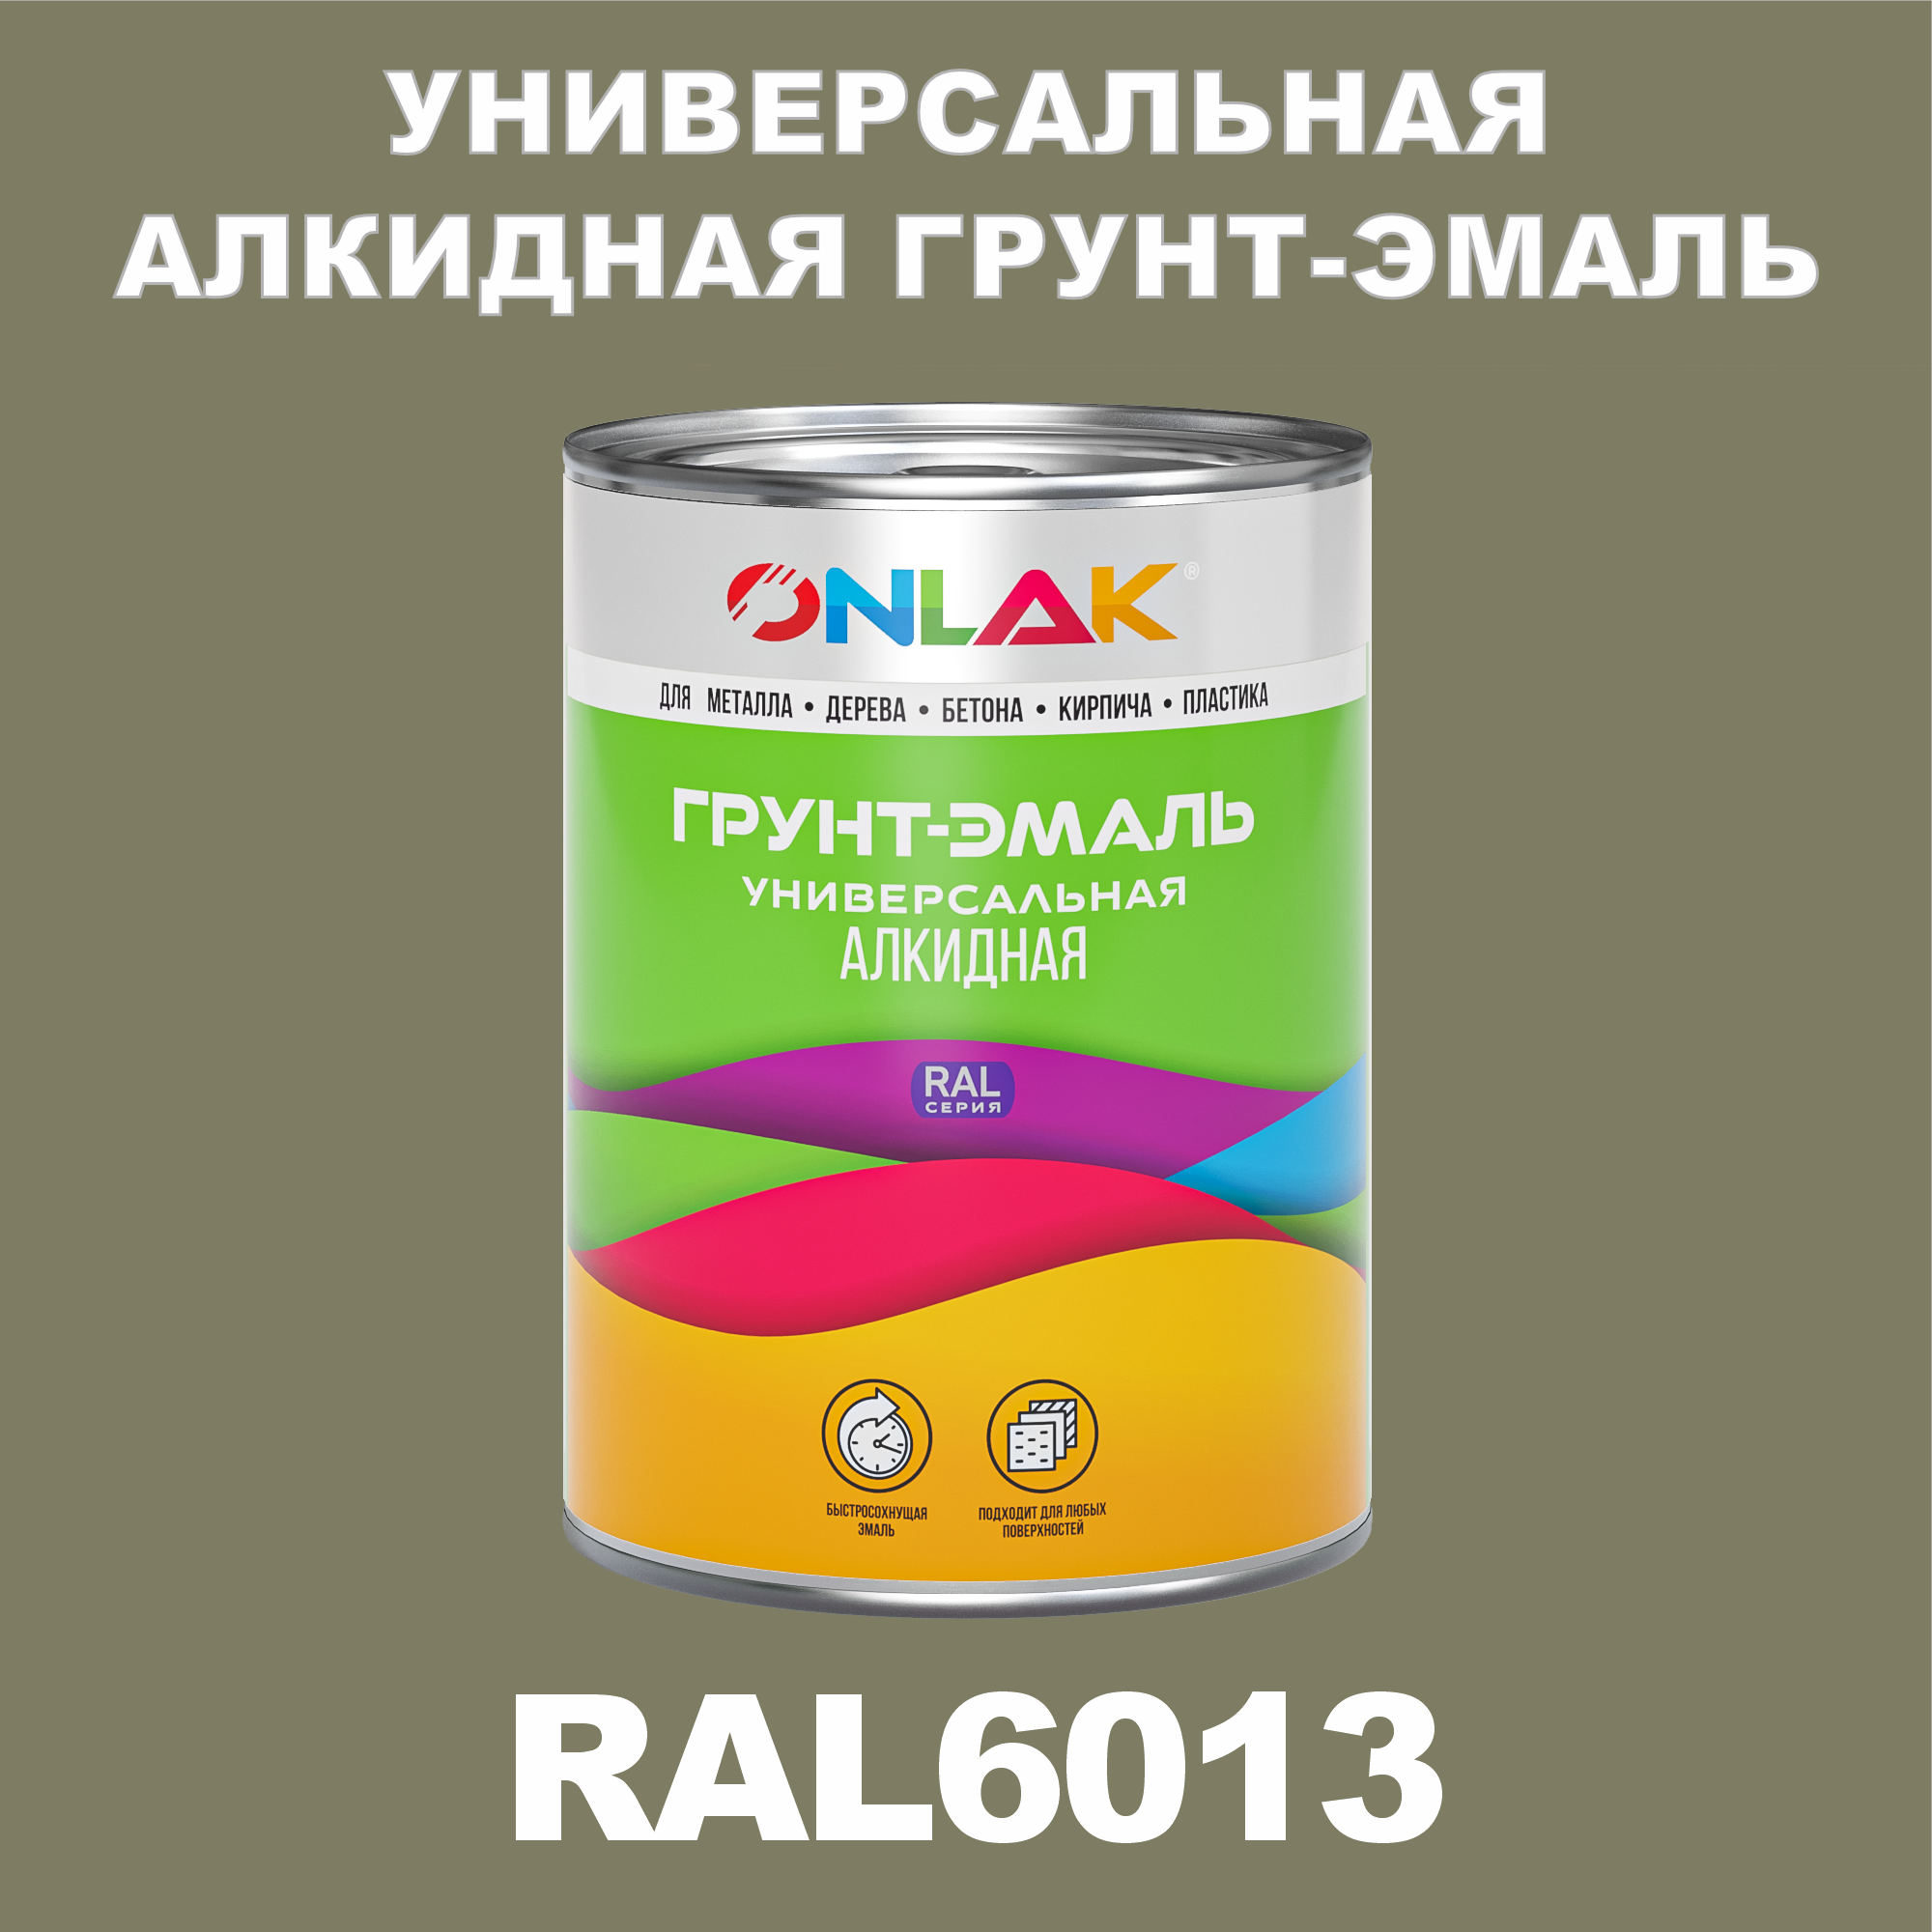 Грунт-эмаль ONLAK 1К RAL6013 антикоррозионная алкидная по металлу по ржавчине 1 кг грунт эмаль yollo по ржавчине алкидная серая 0 9 кг